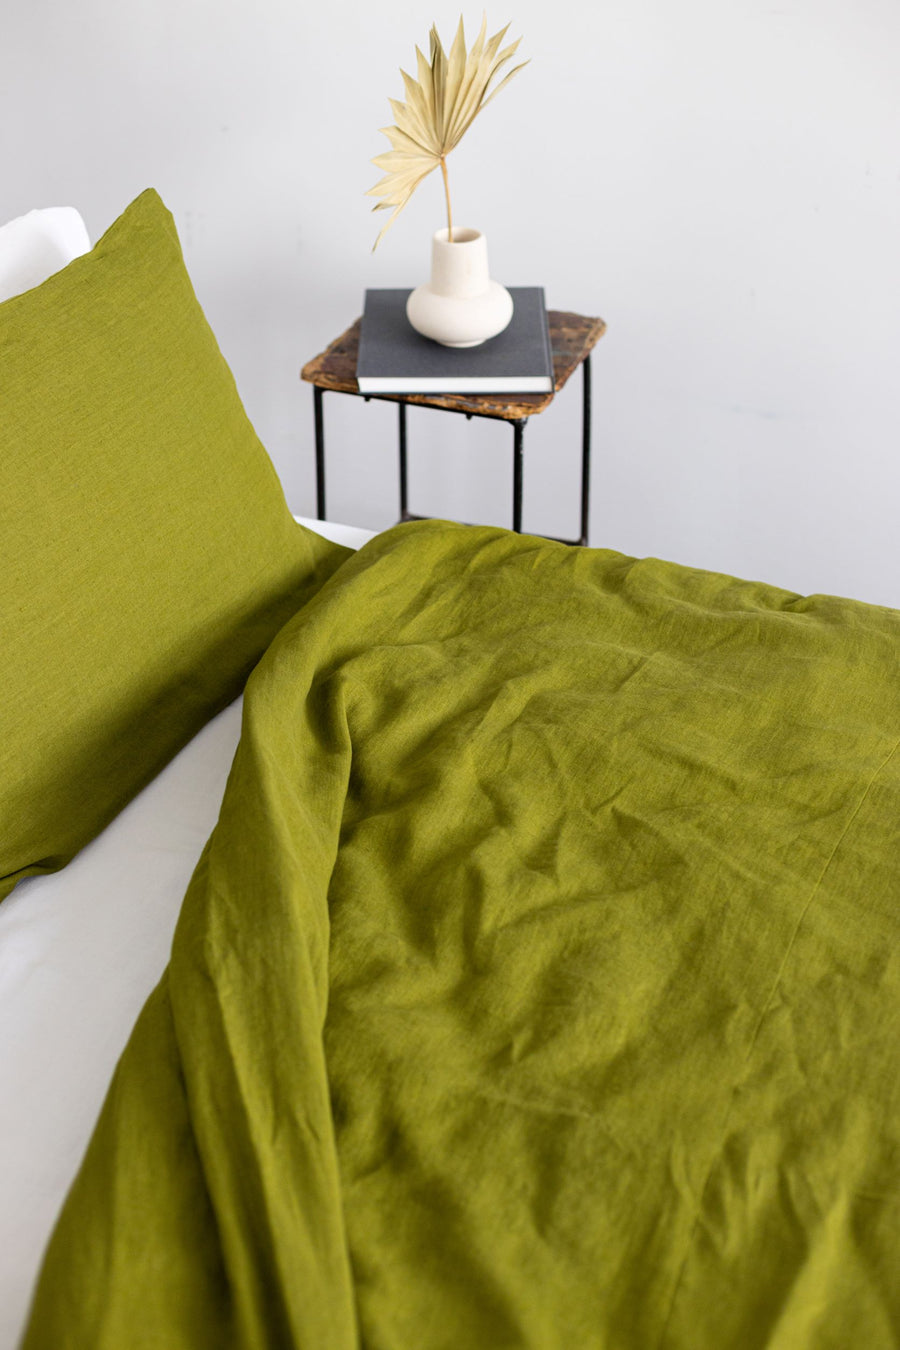 Moss Green Linen Duvet Cover And 2 Pillow Cases